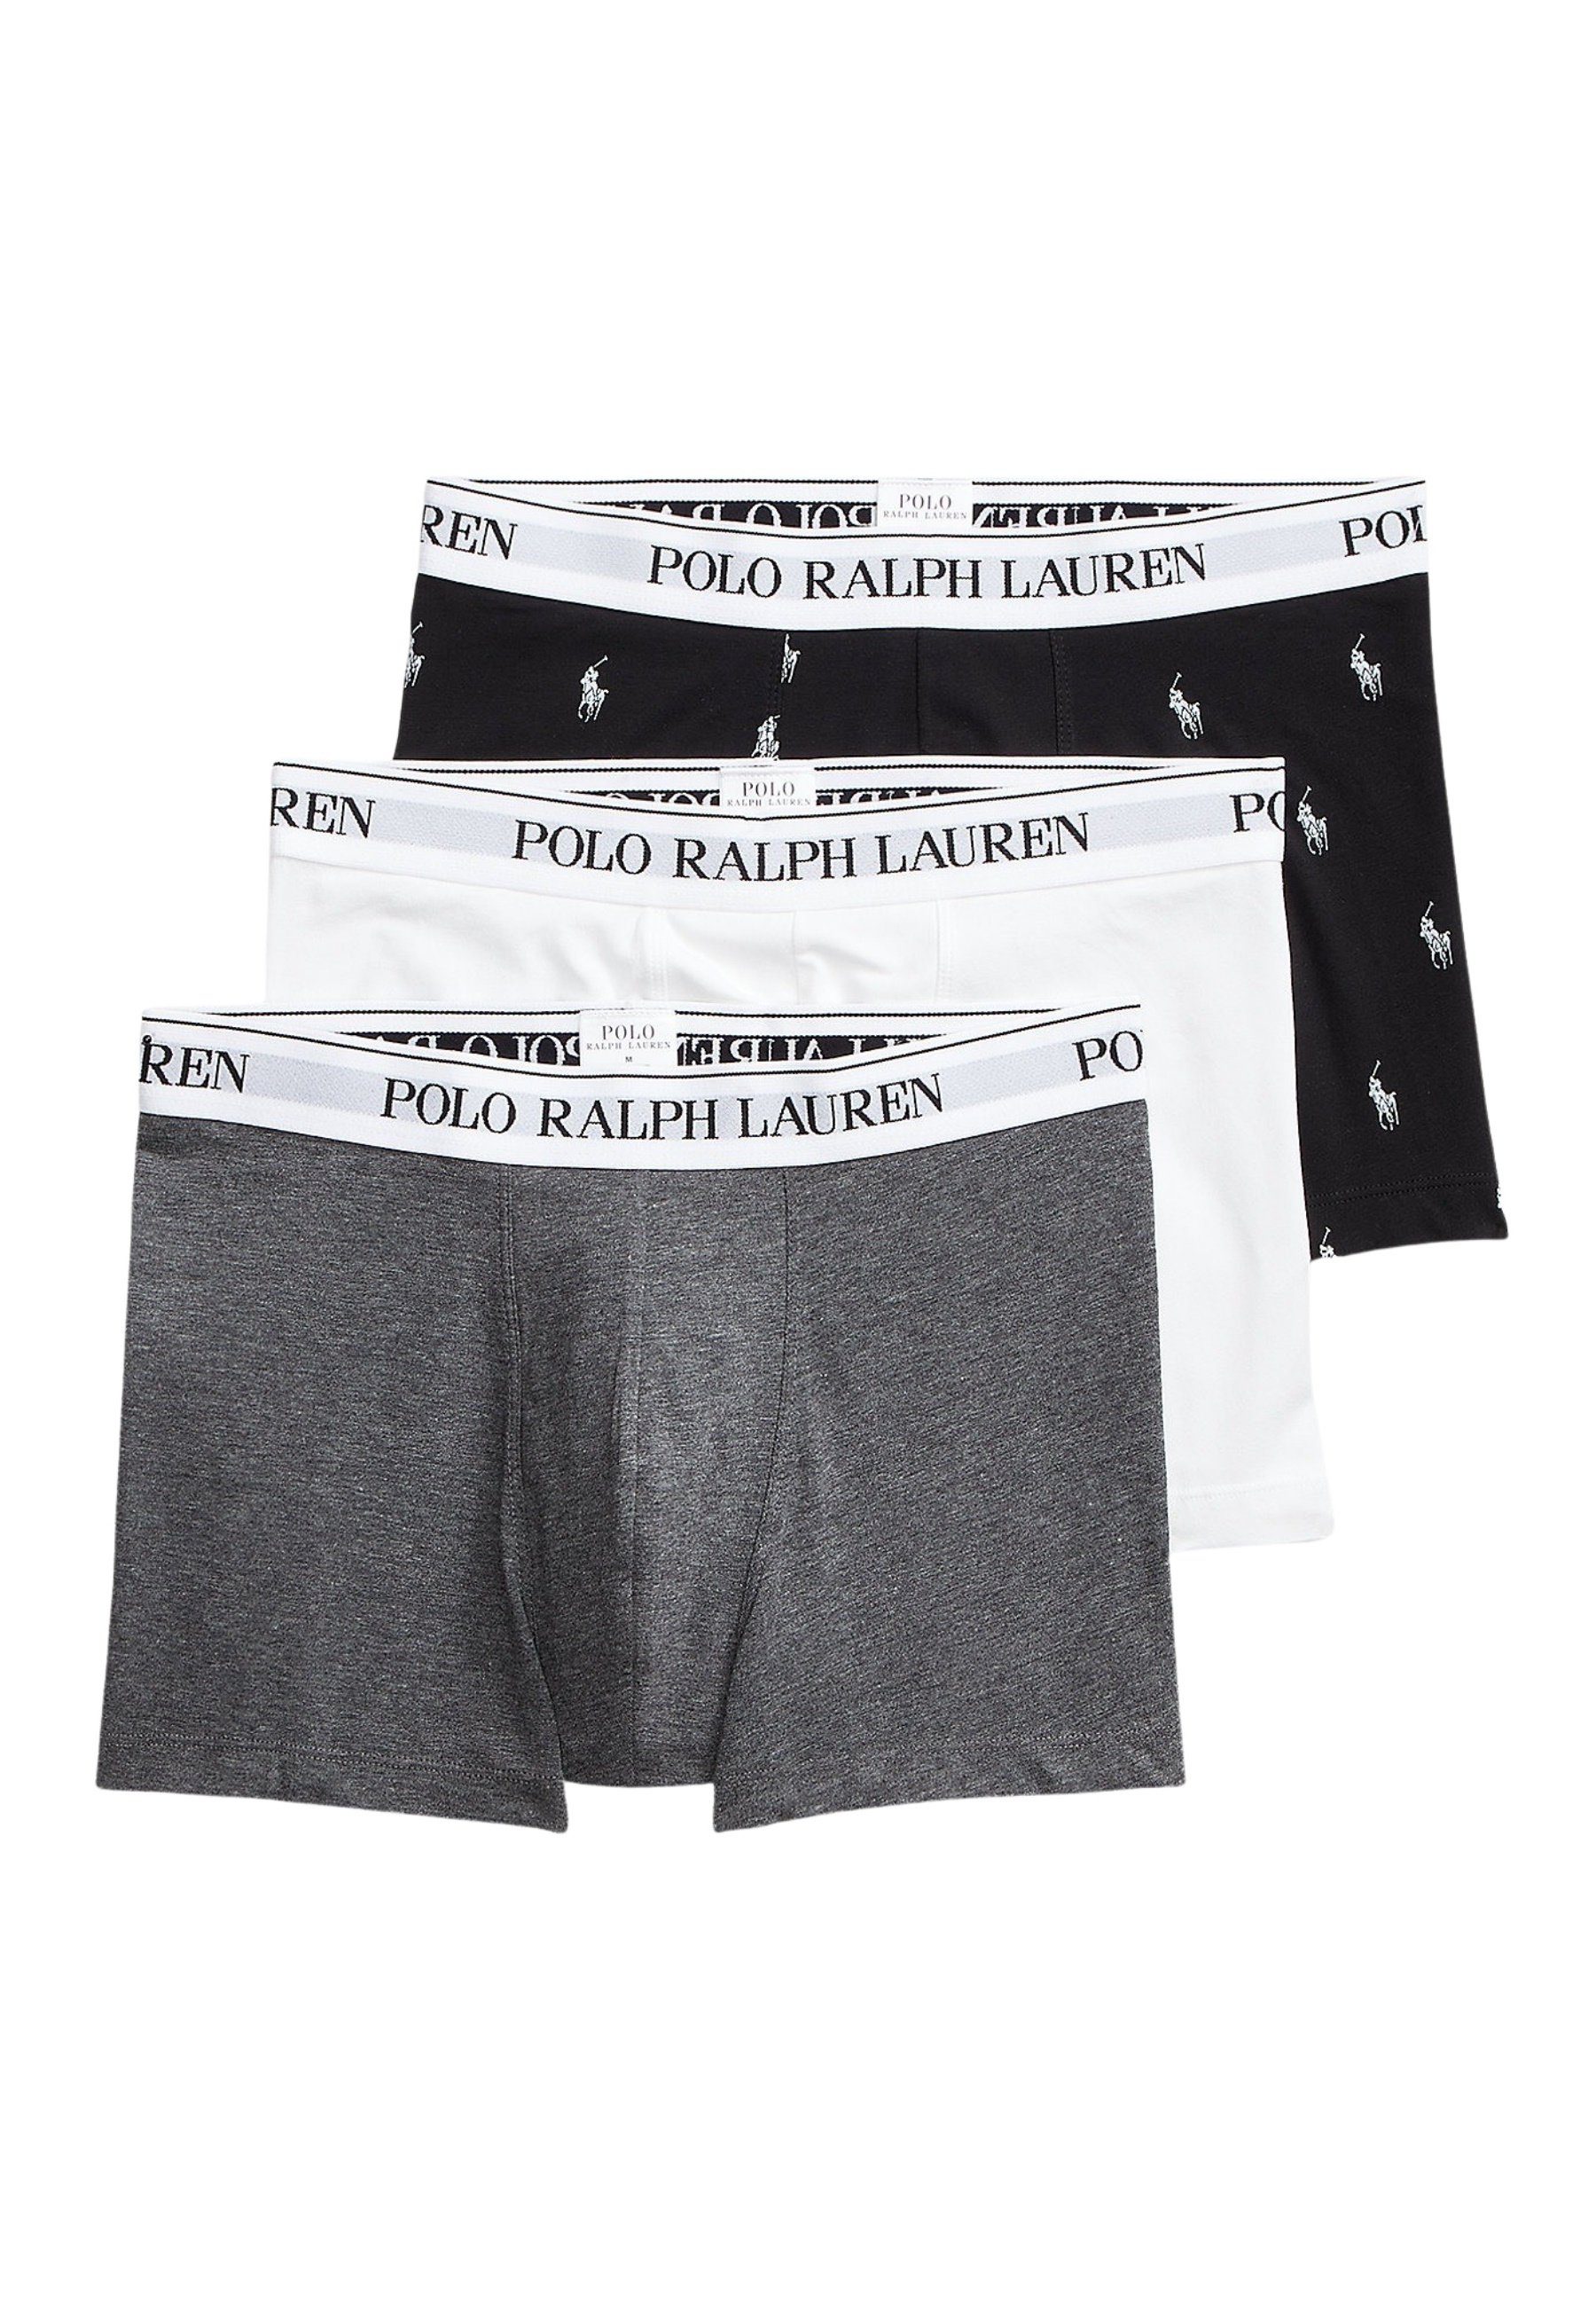 Polo Ralph Lauren Ralph Lauren Boxershorts Unterhose Trunks 3er Pack (3-St) Dunkelgrau/Weiß/Schwarz